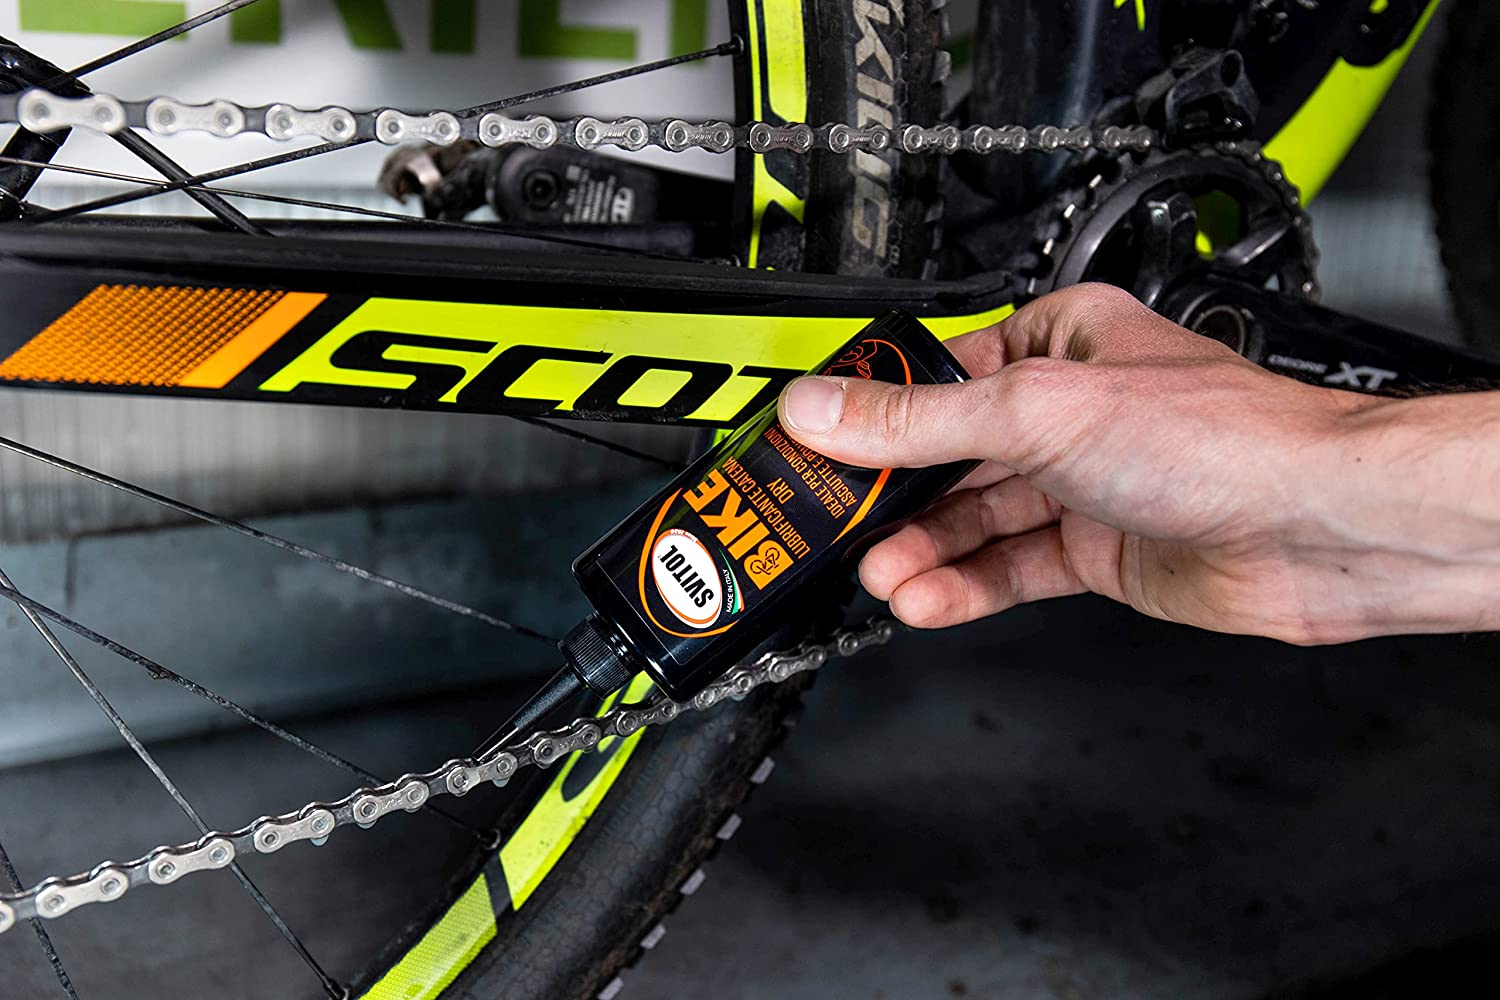 Svitol Bike DRY lubrificante per catena bicicletta Giro d'Italia 100ml -  Cod. 4369 - ToolShop Italia